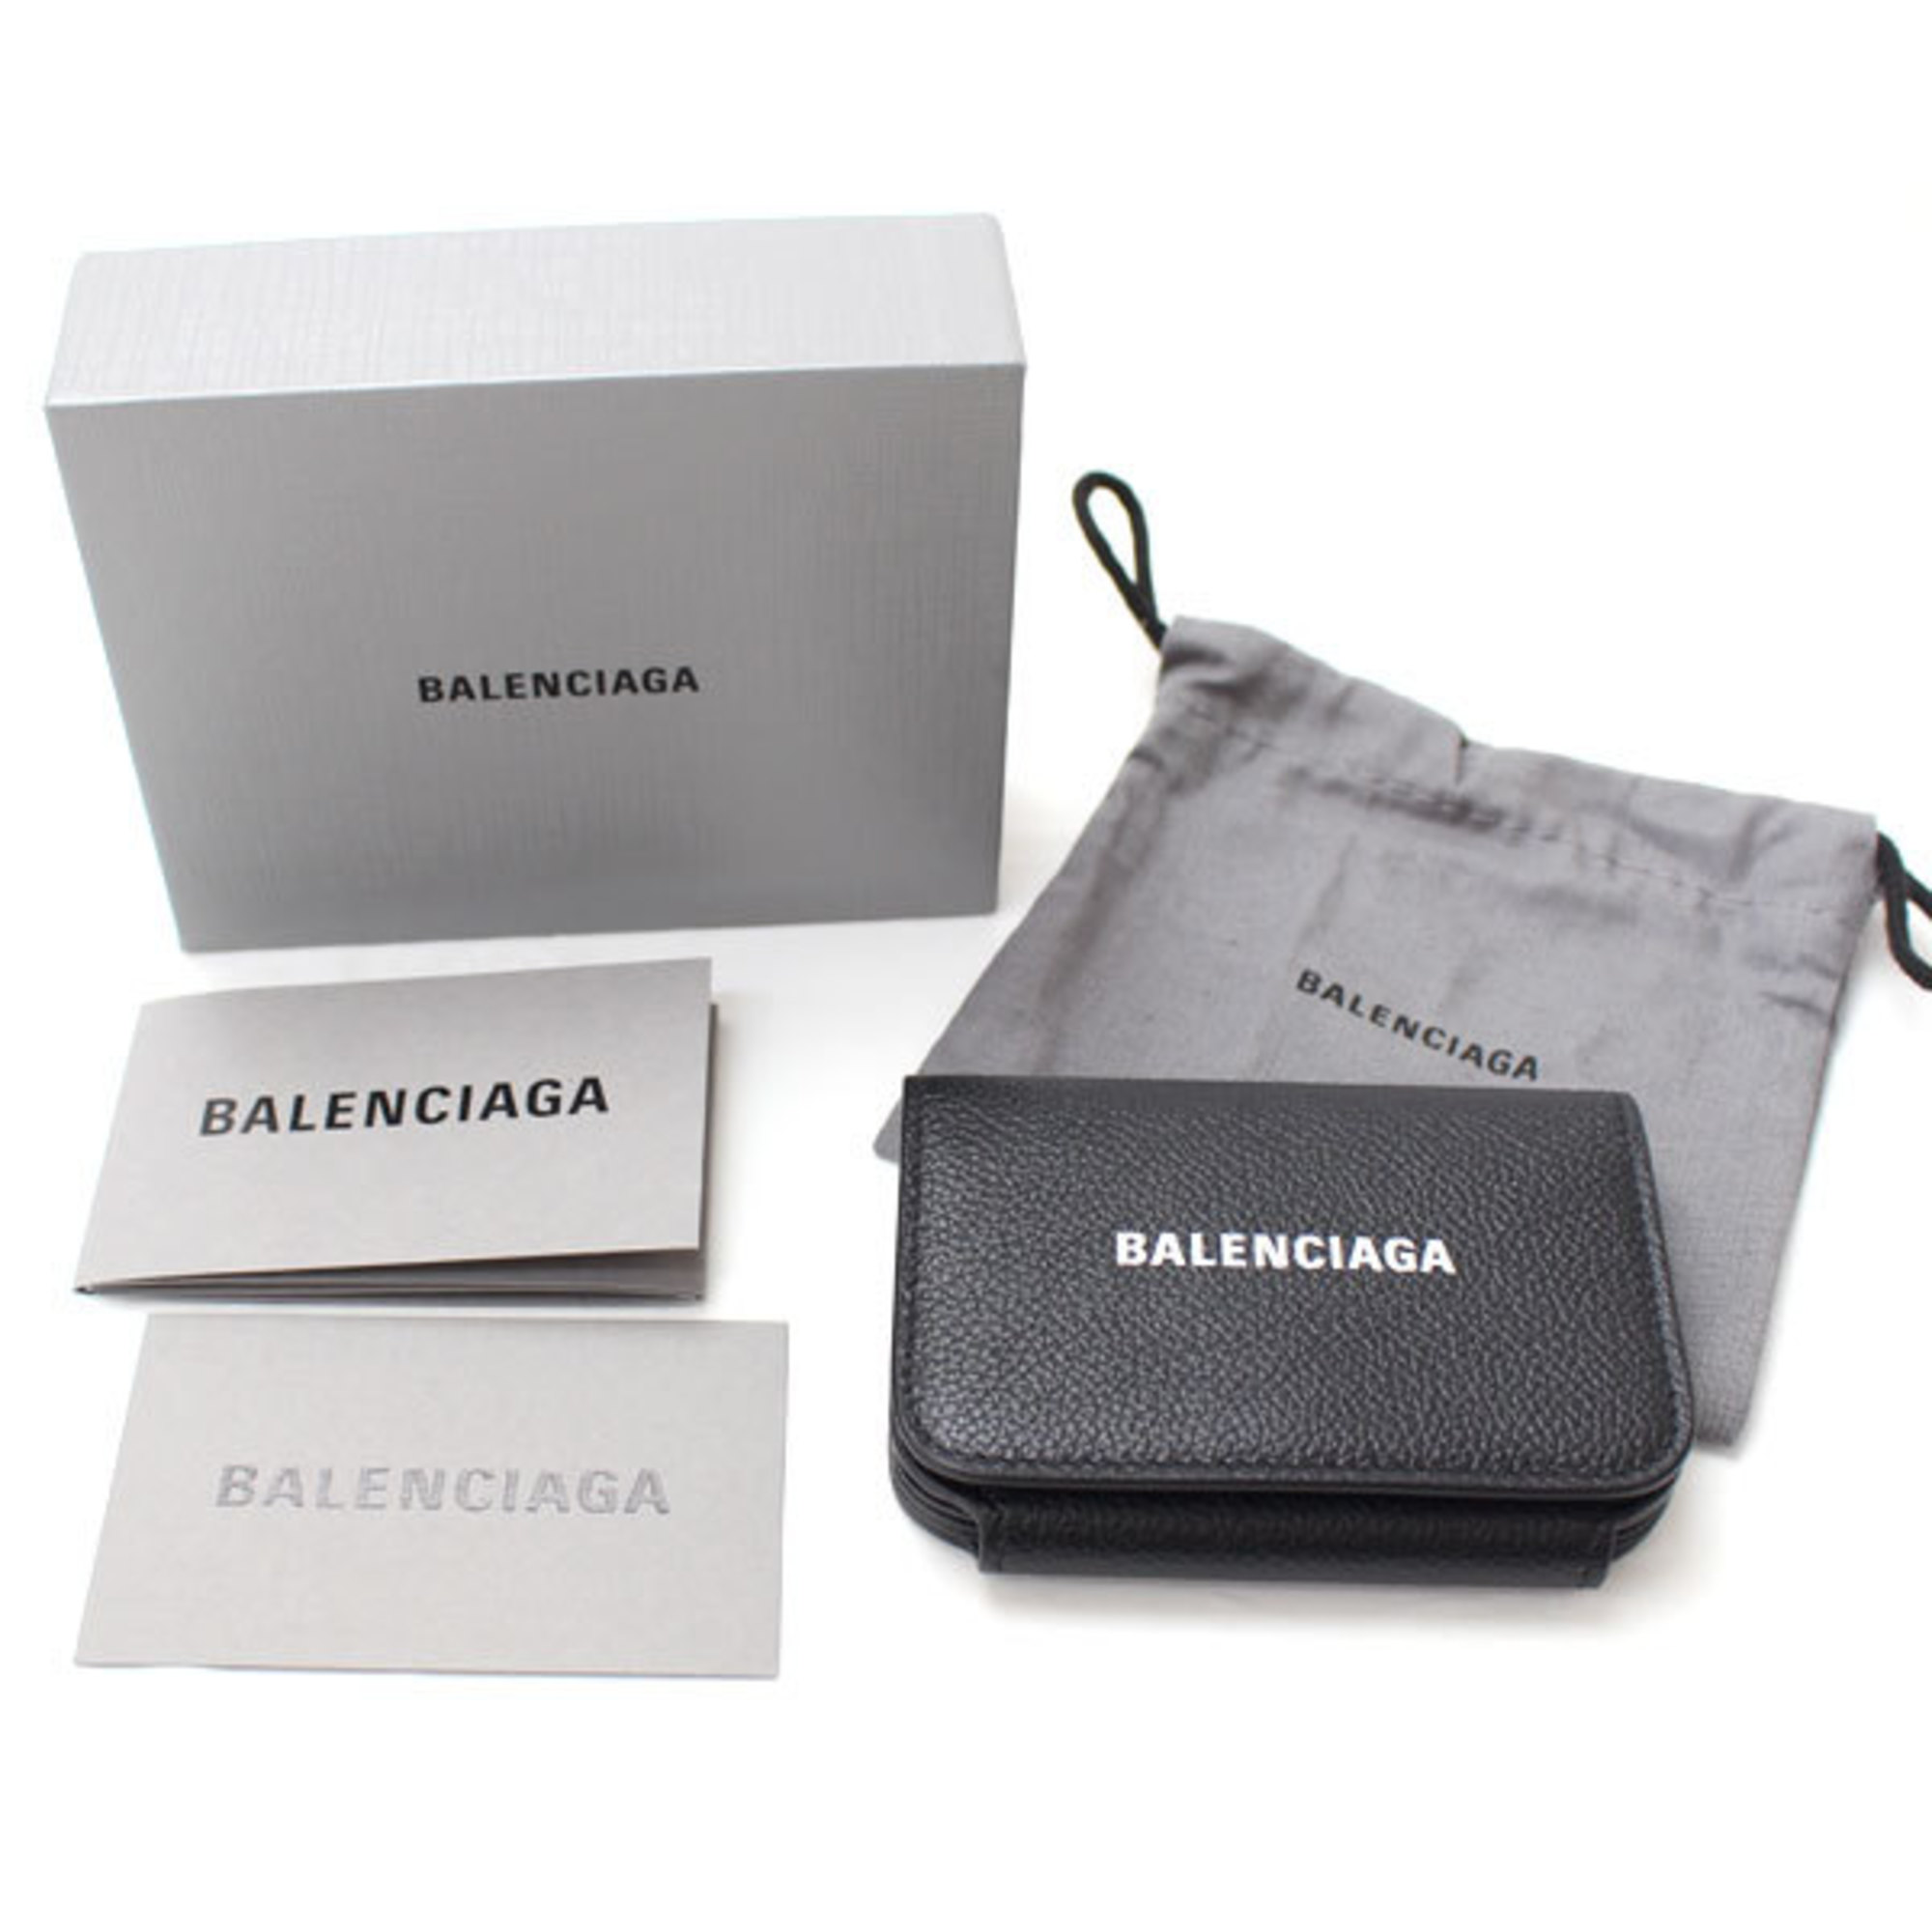 BALENCIAGA Balenciaga Card Case Black 634856 1090 1IZIM Unisex